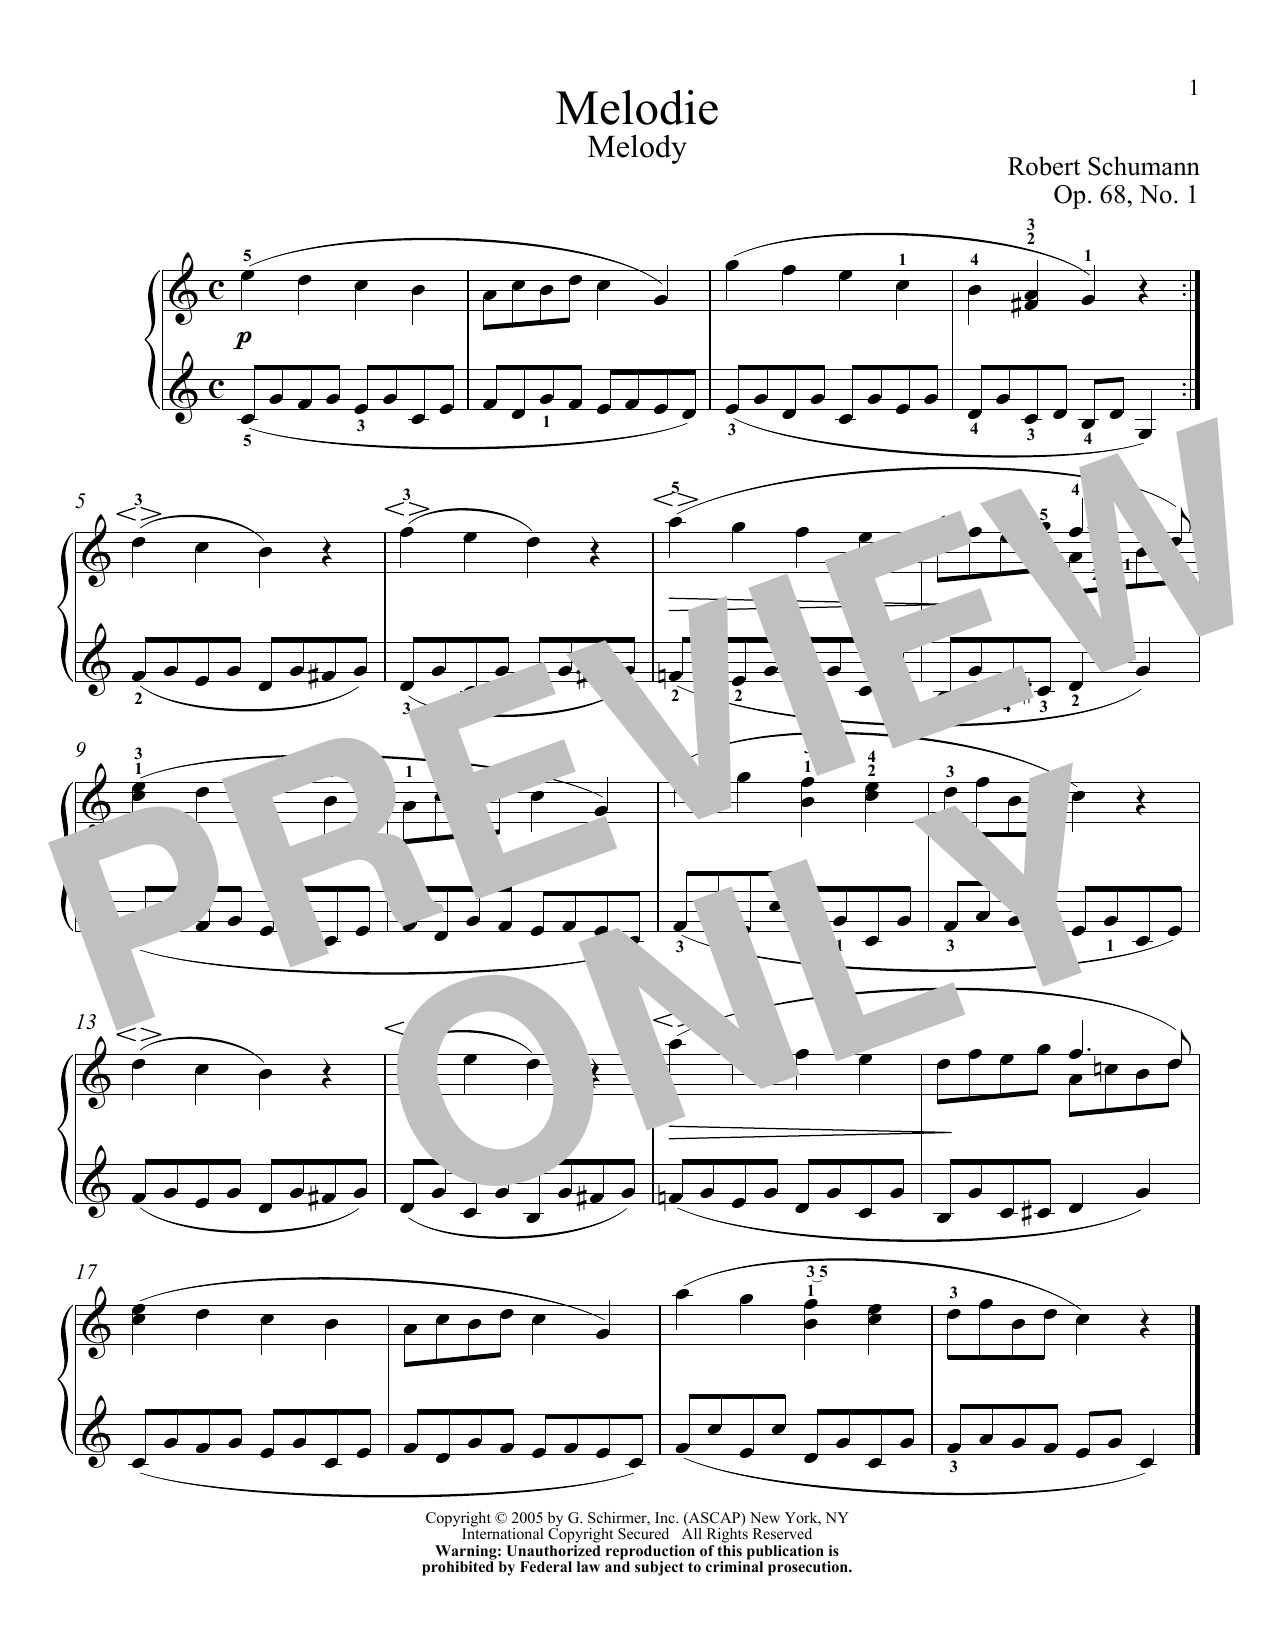 Download Robert Schumann Melody, Op. 68, No. 1 Sheet Music